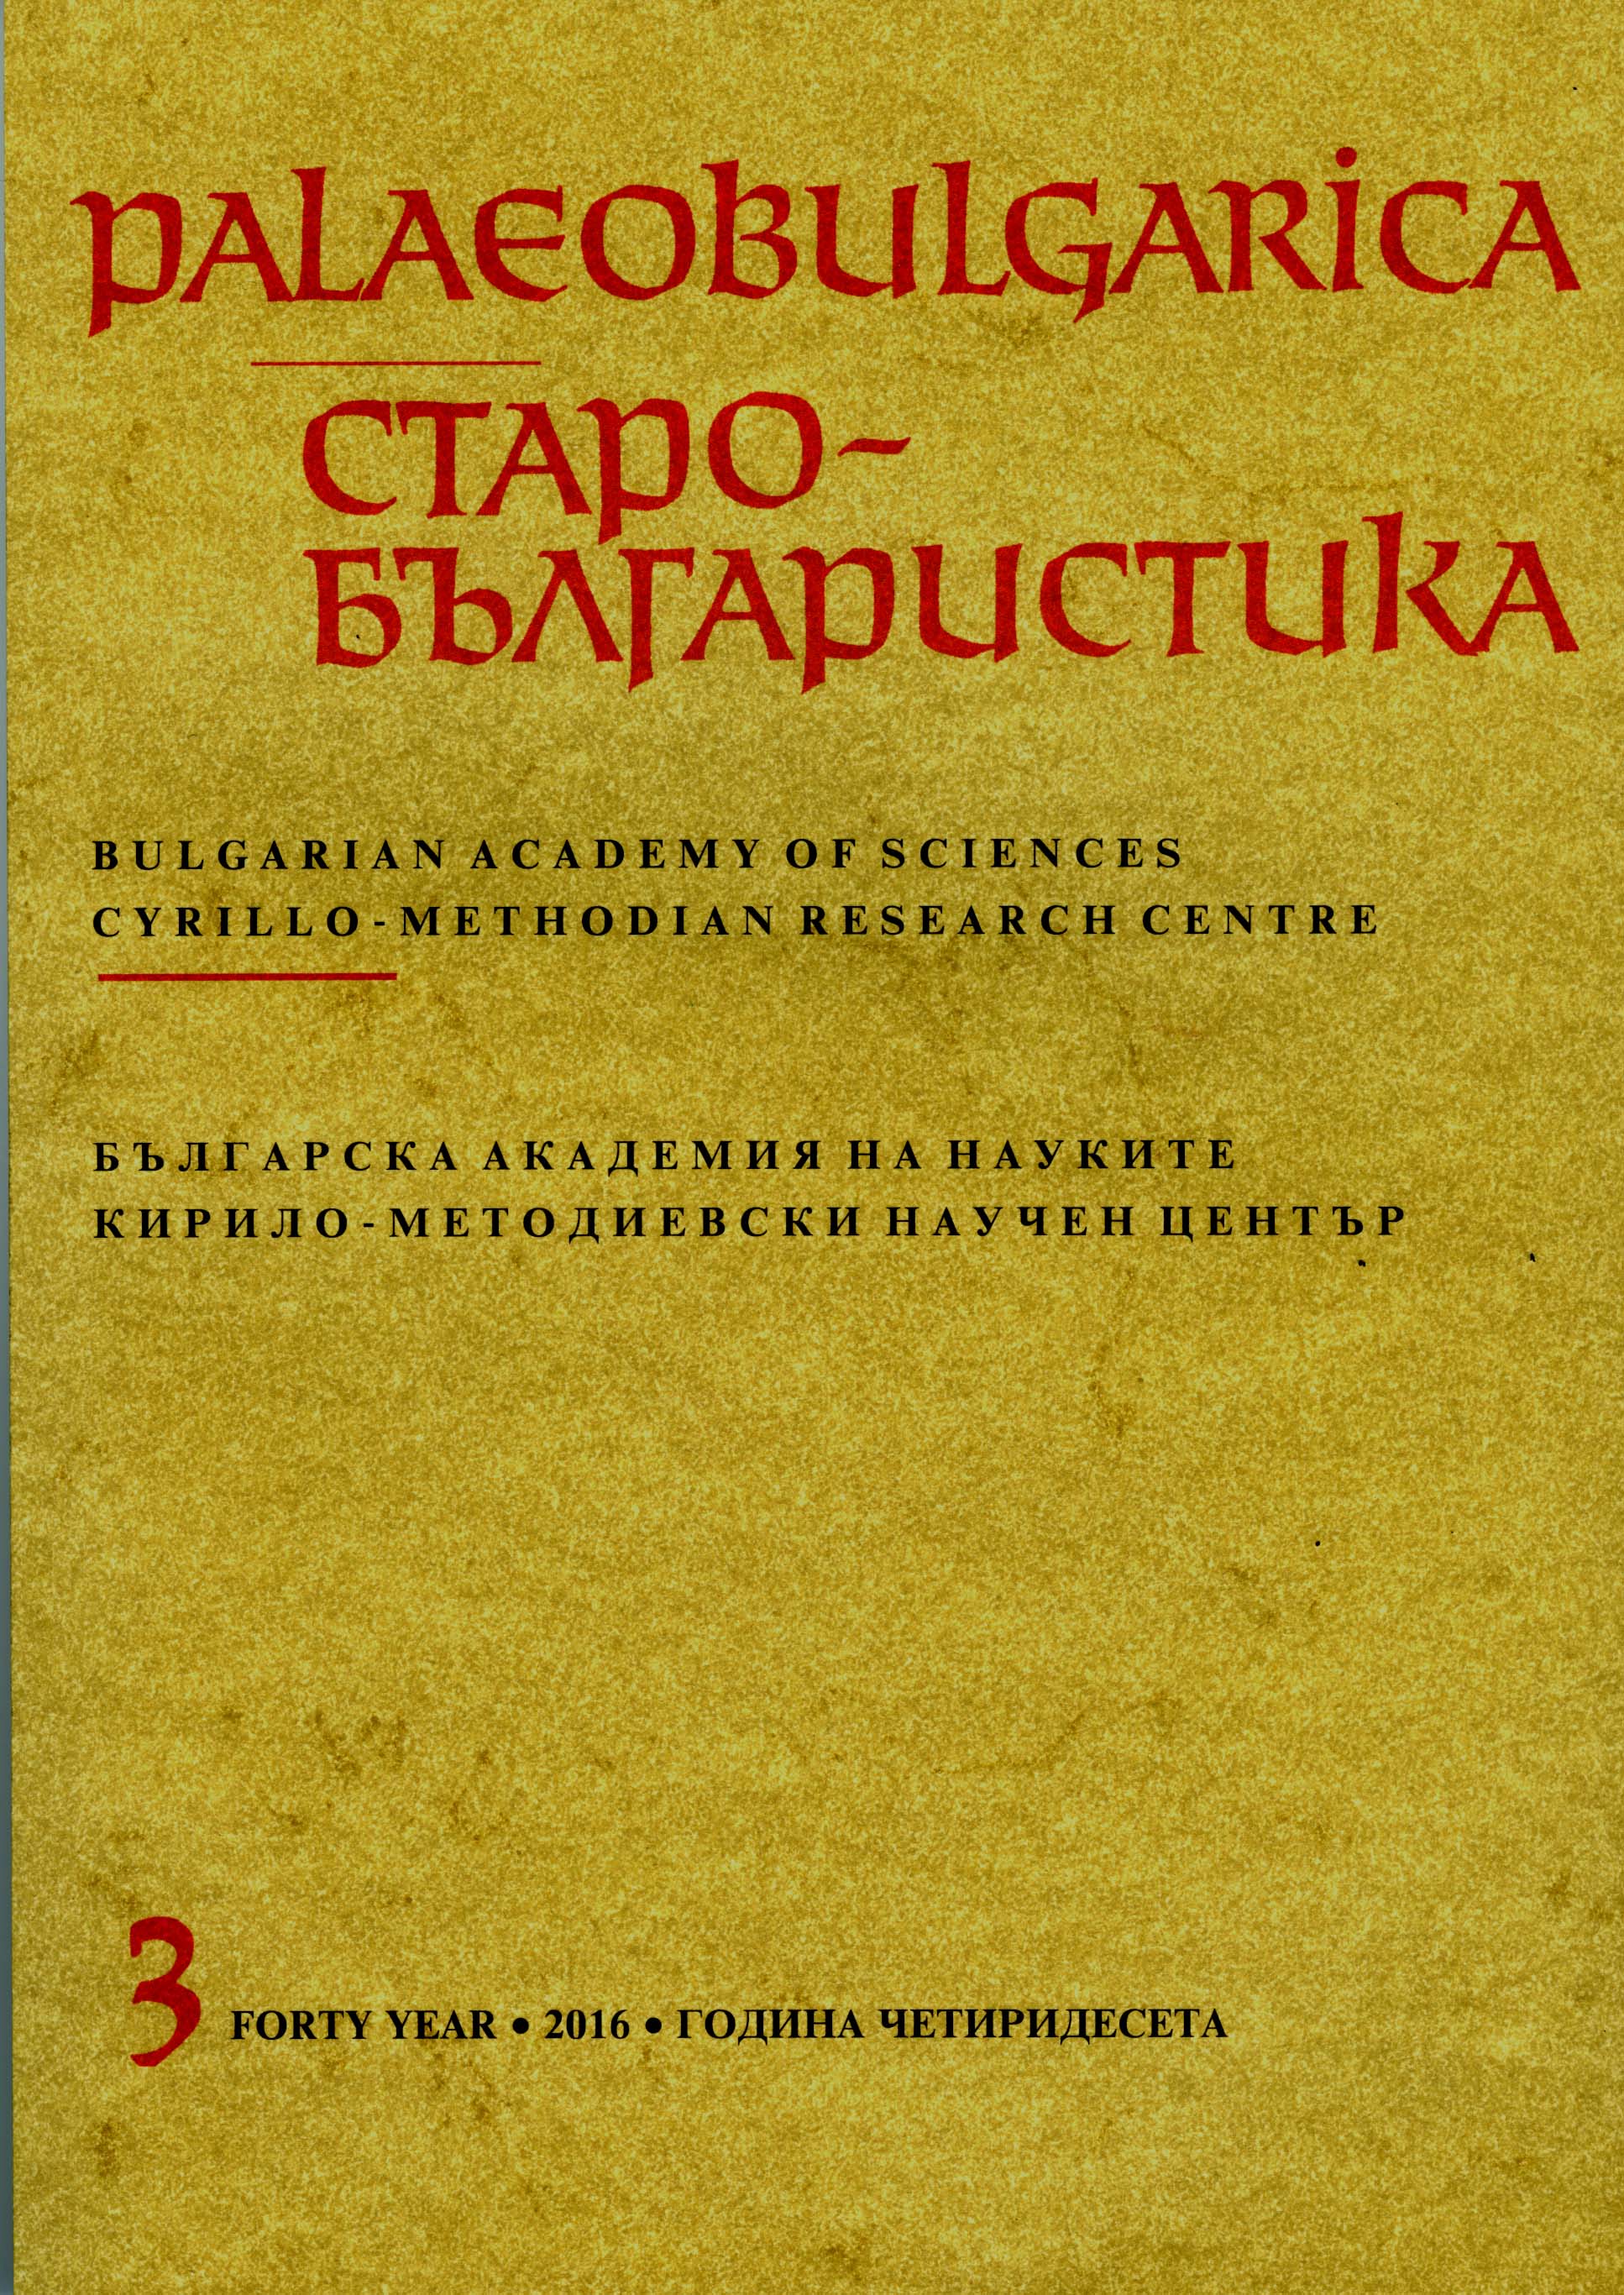 Библия в византийско-славянском мире: новейшие исследования, итоги и перспективы